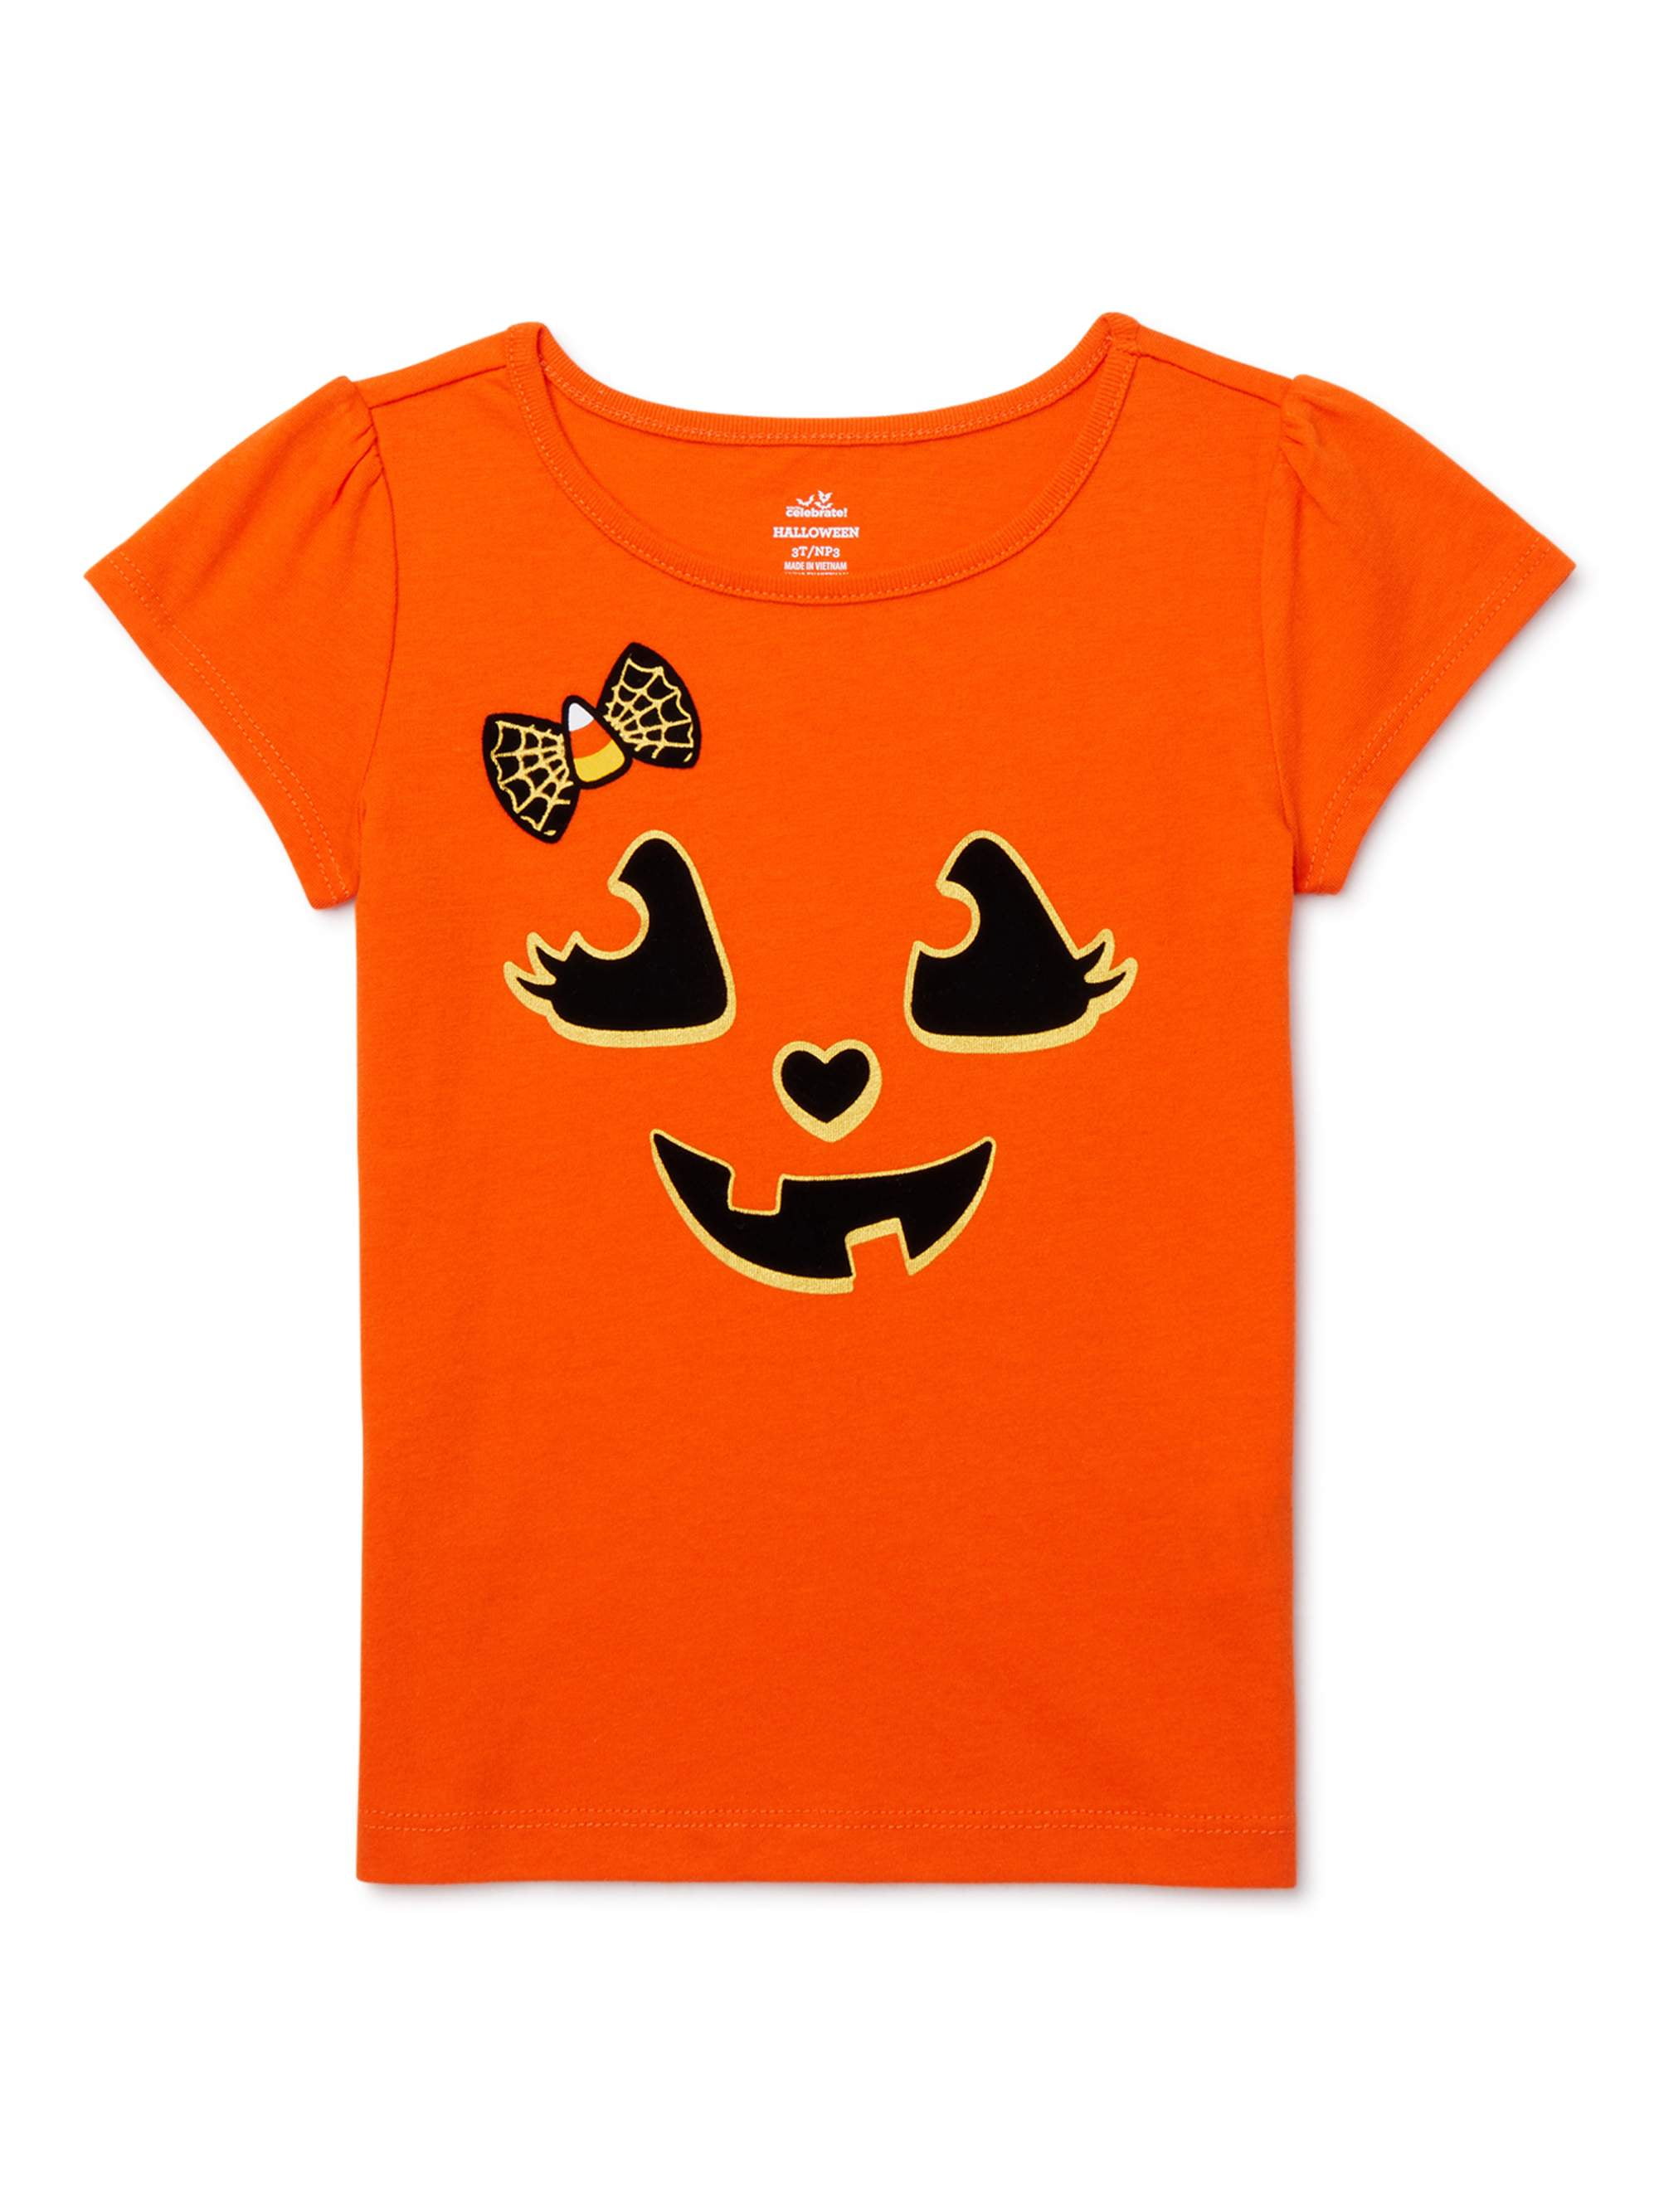 Kids Pumpkin Shirt Pumpkin Patch Shirt Girls Pumpkin Shirt